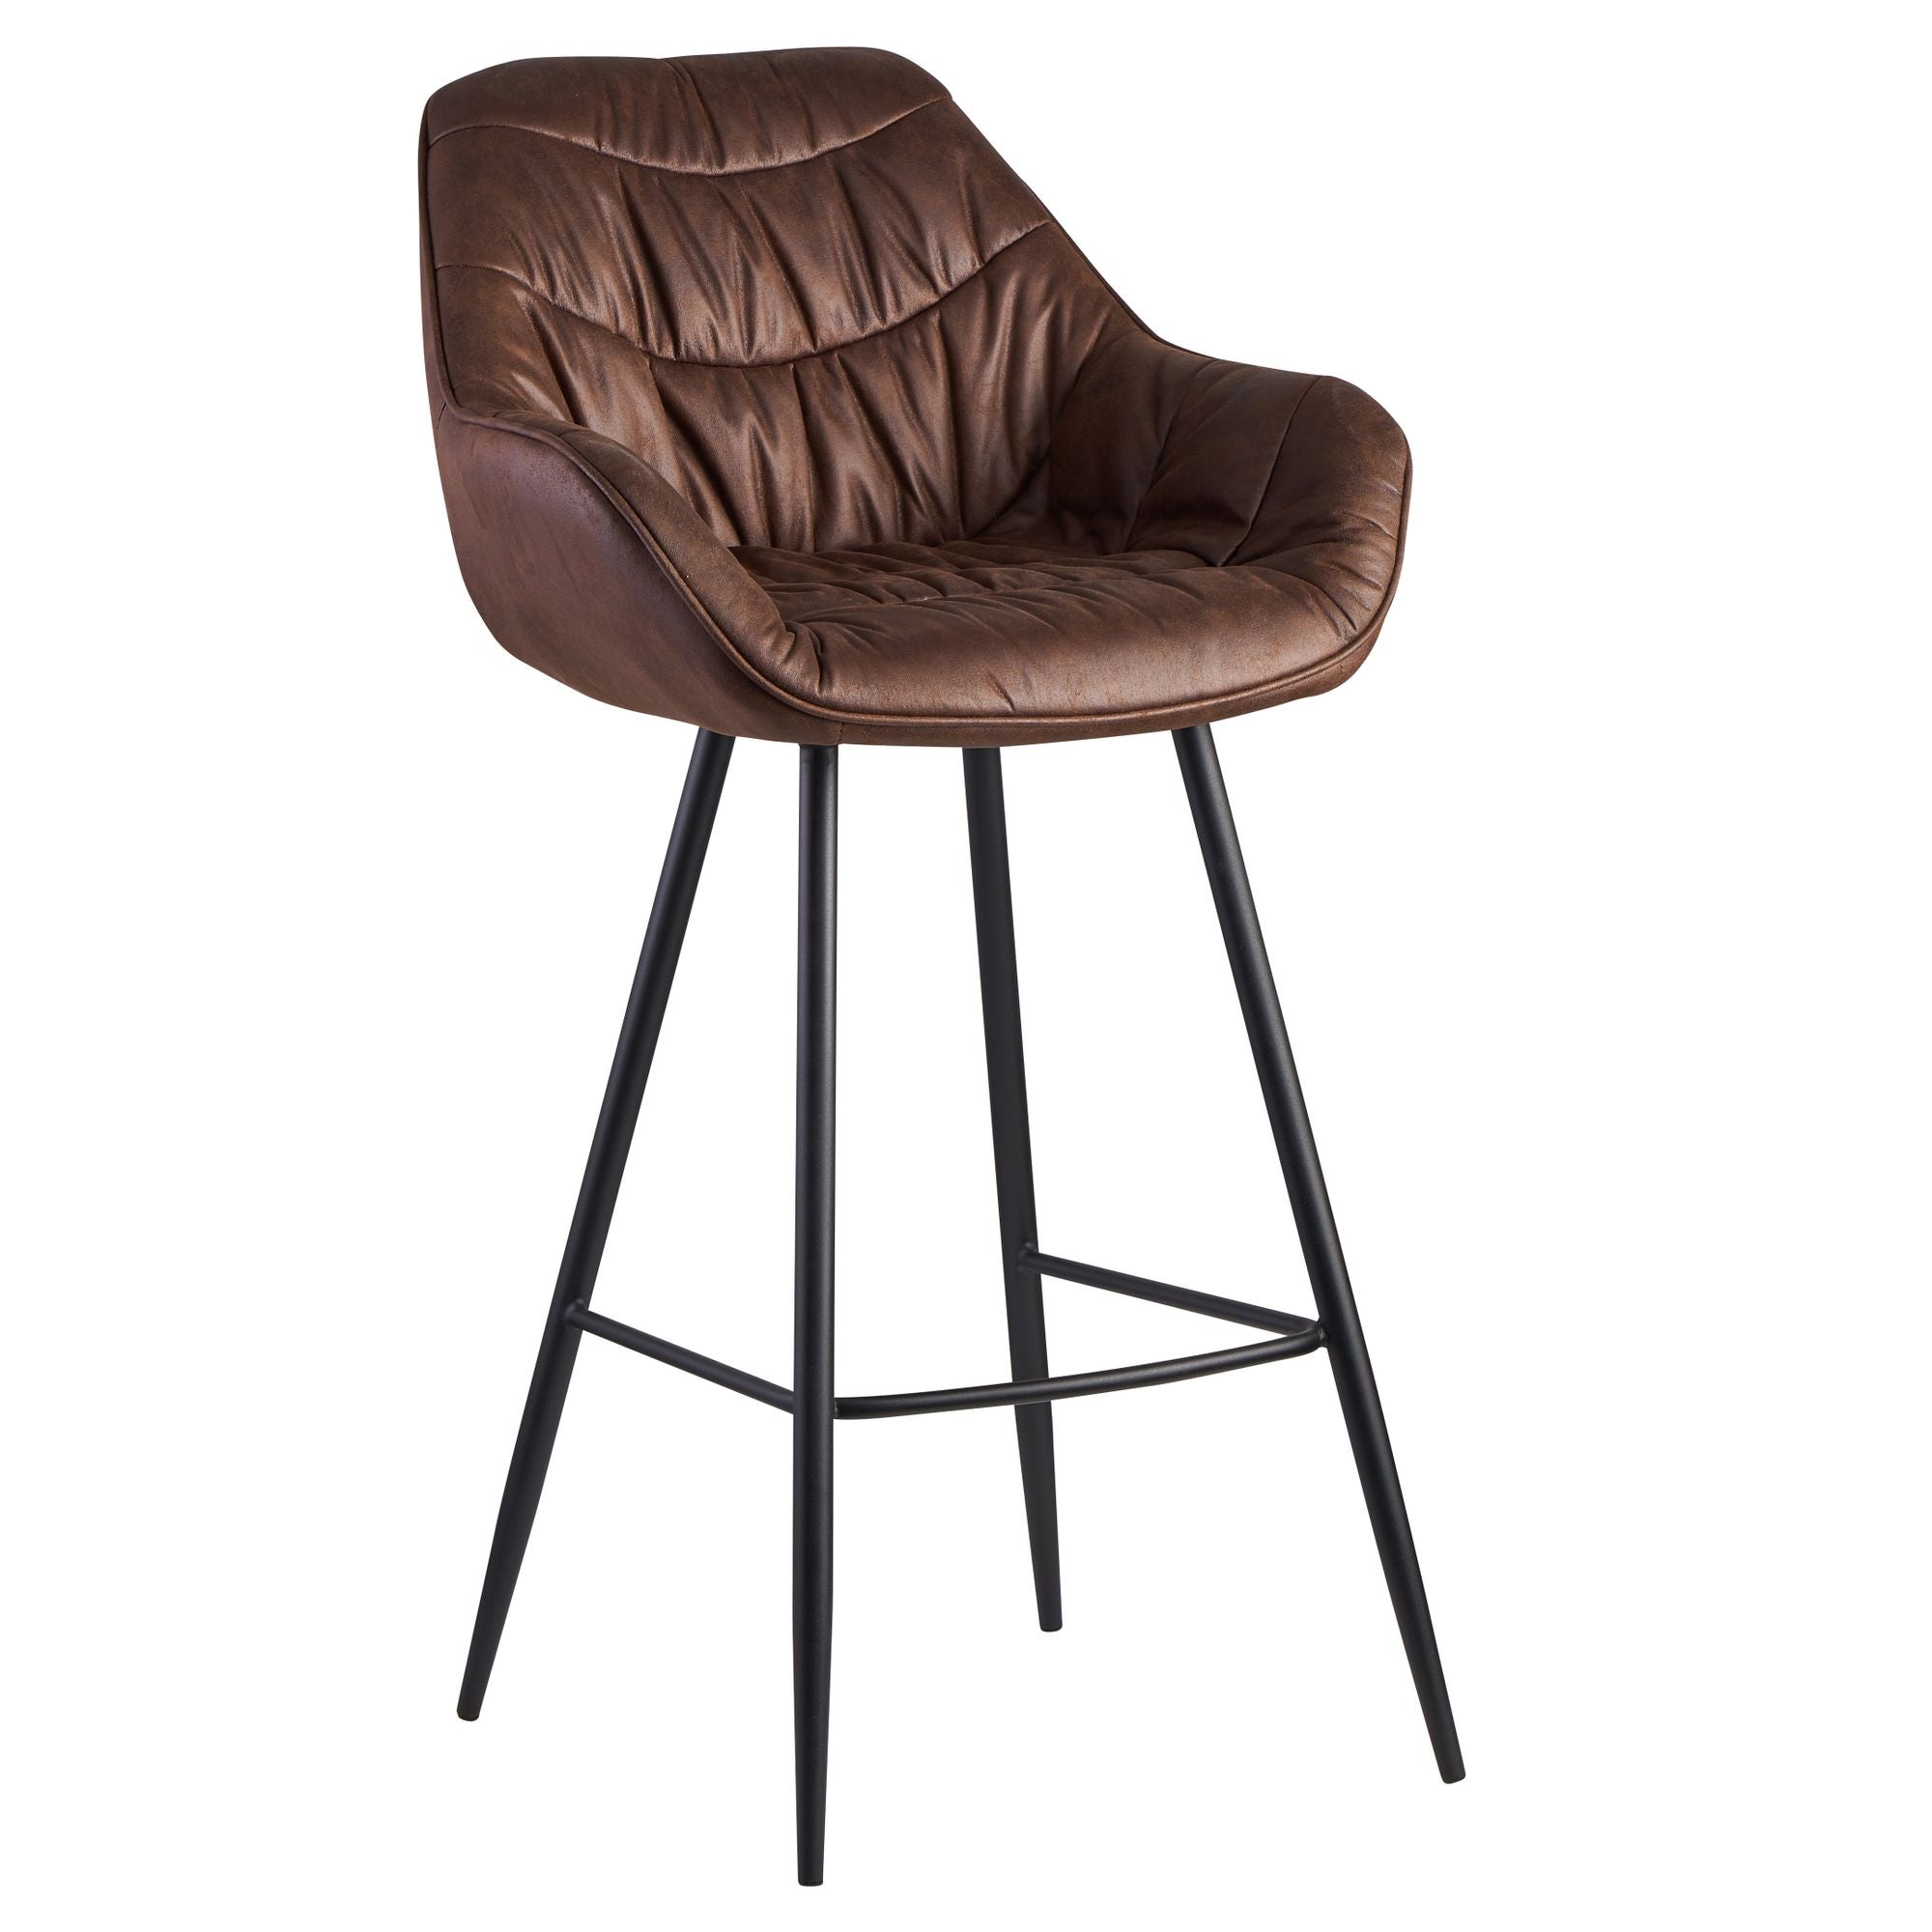 Billede af Barstol / bistrostol i trendy skandinavisk stil, ruskind stof, med ryglæn, 56x108x59 cm, brun